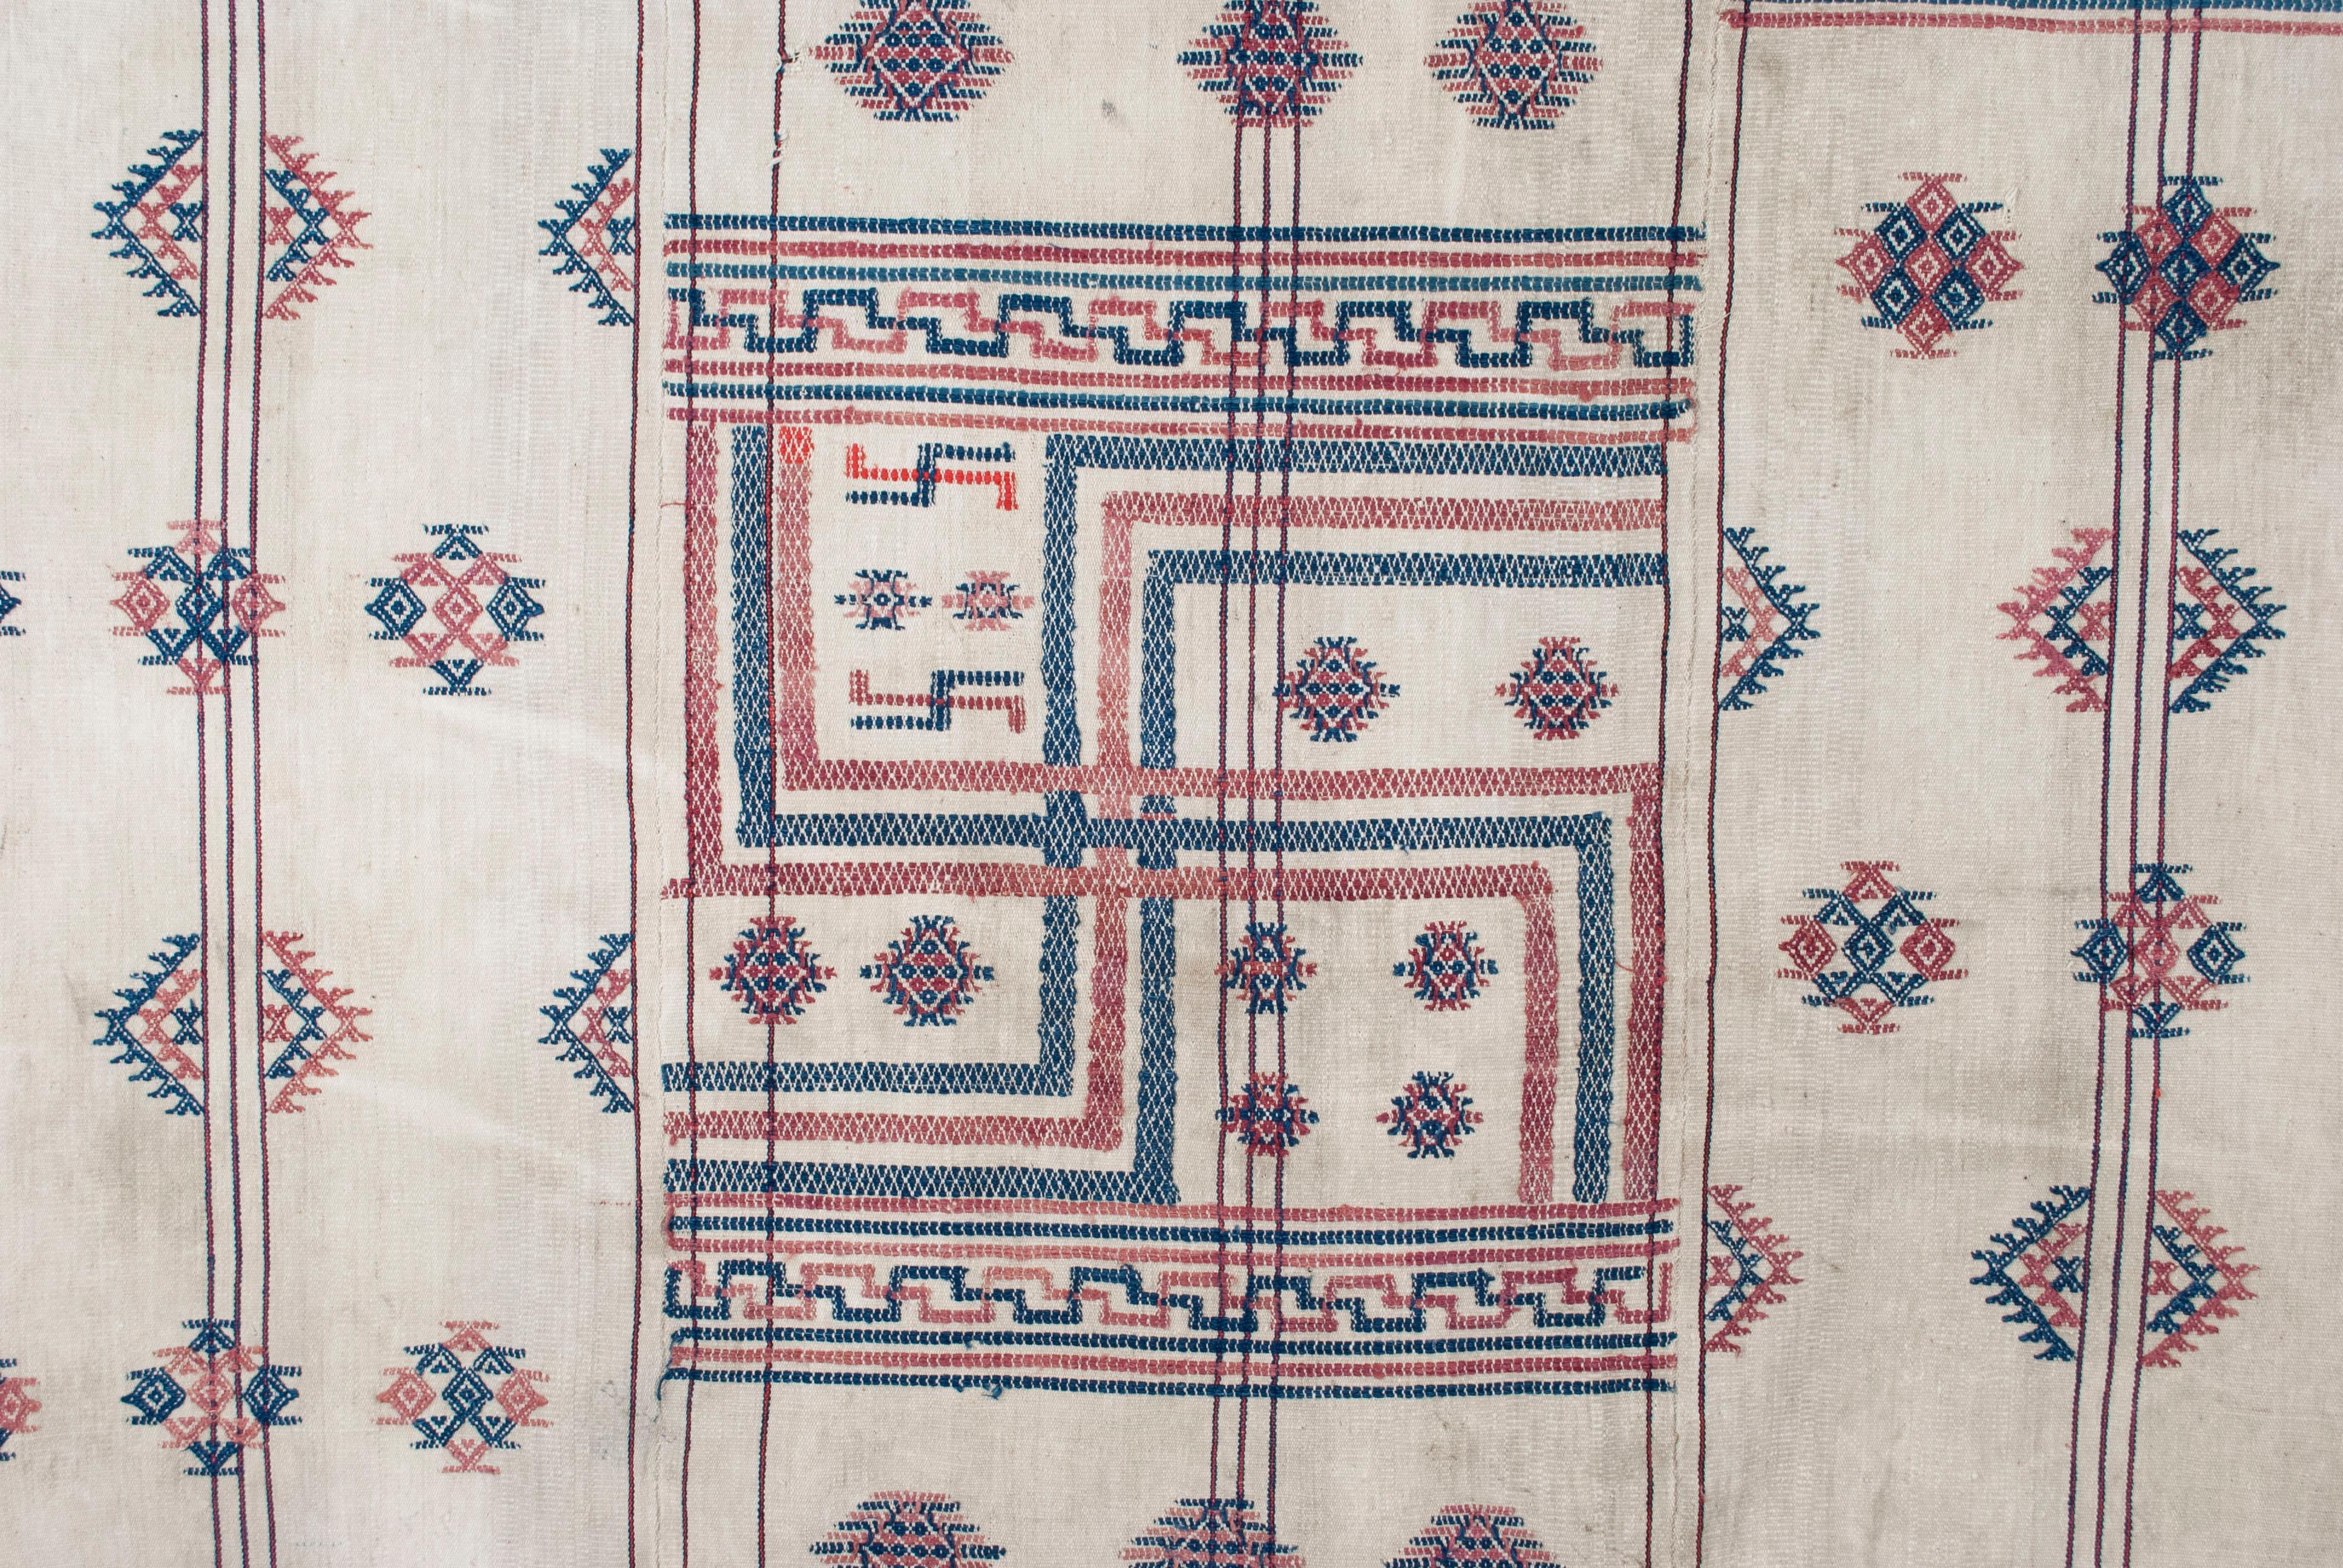 Début du 20e siècle, tissu d'emballage bhoutanais / bhundi

Un exemple magnifiquement préservé d'un rare tissu d'emballage bhoutanais (bhundi), qui aurait été utilisé pour les sorties à la campagne ou à d'autres fins pratiques. Le motif central du